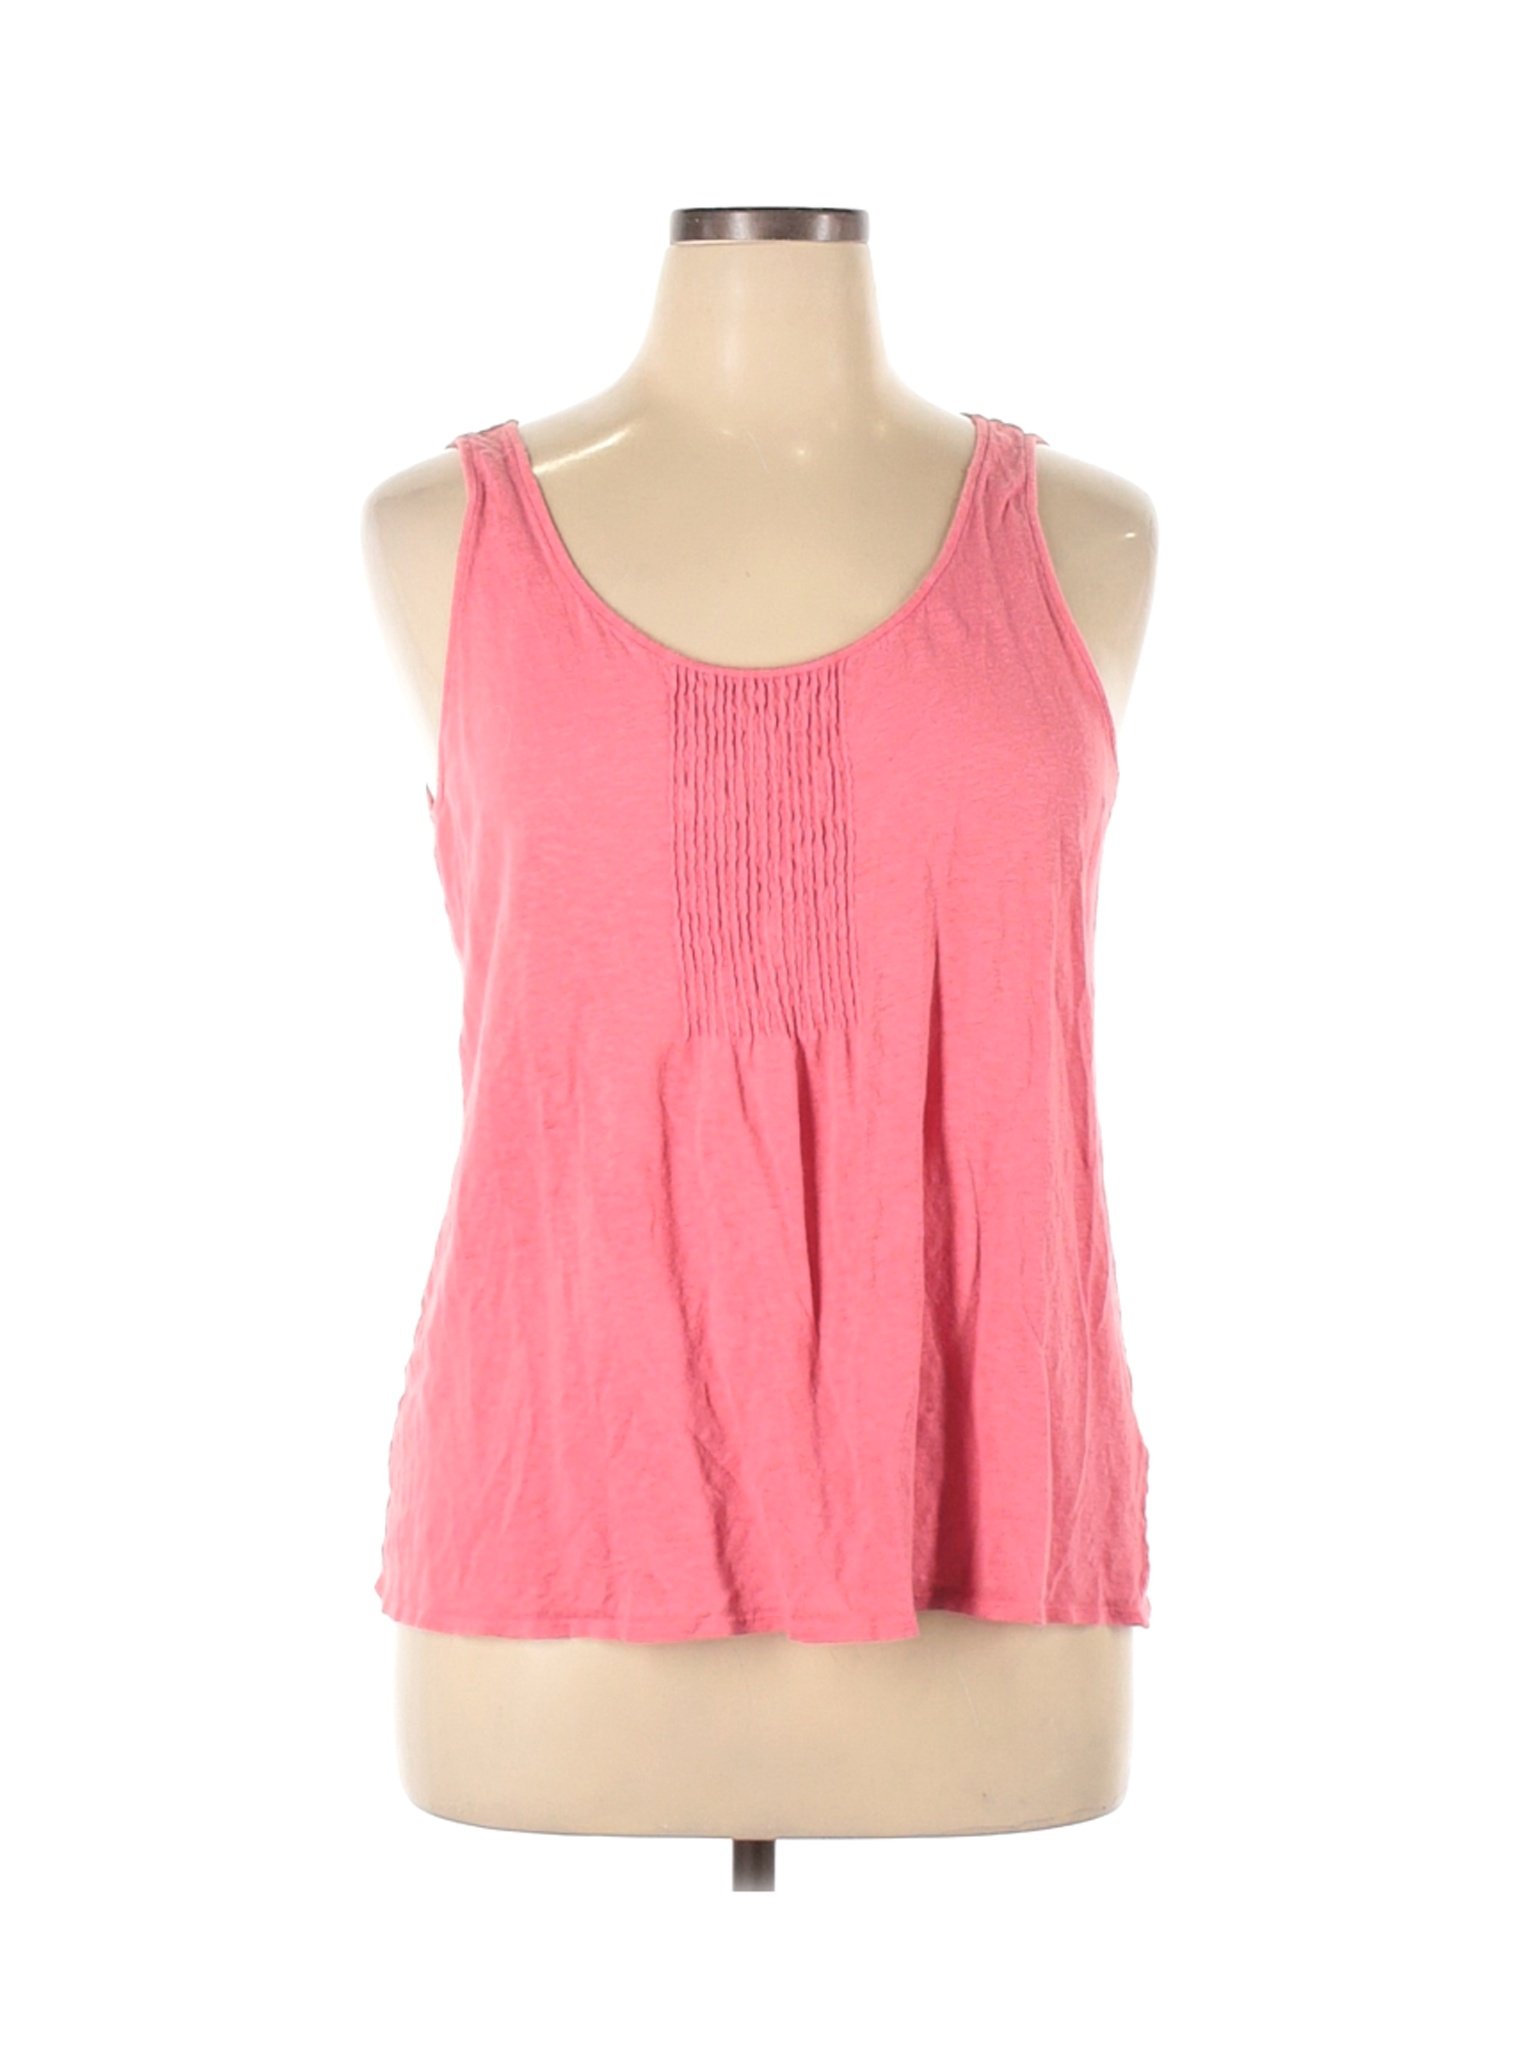 Eileen Fisher Women Pink Sleeveless Top XL | eBay